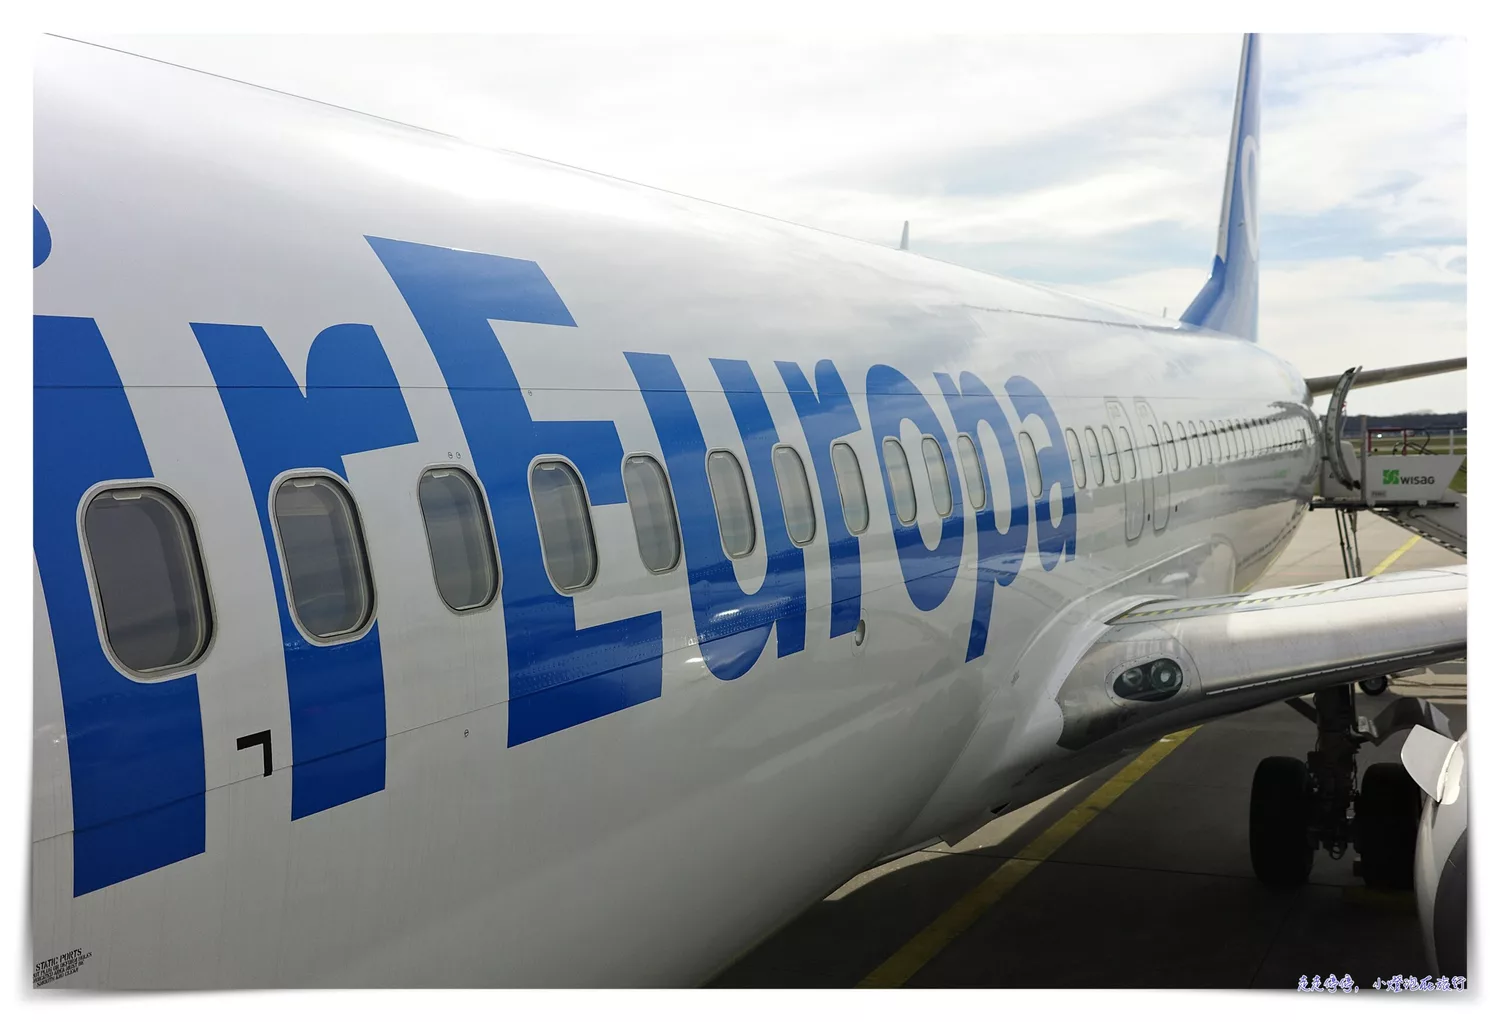 2023華航台北法蘭克福來回搭乘評價｜一本票接歐洲內陸線轉機、入關證照查驗流程、777-300搭乘感受